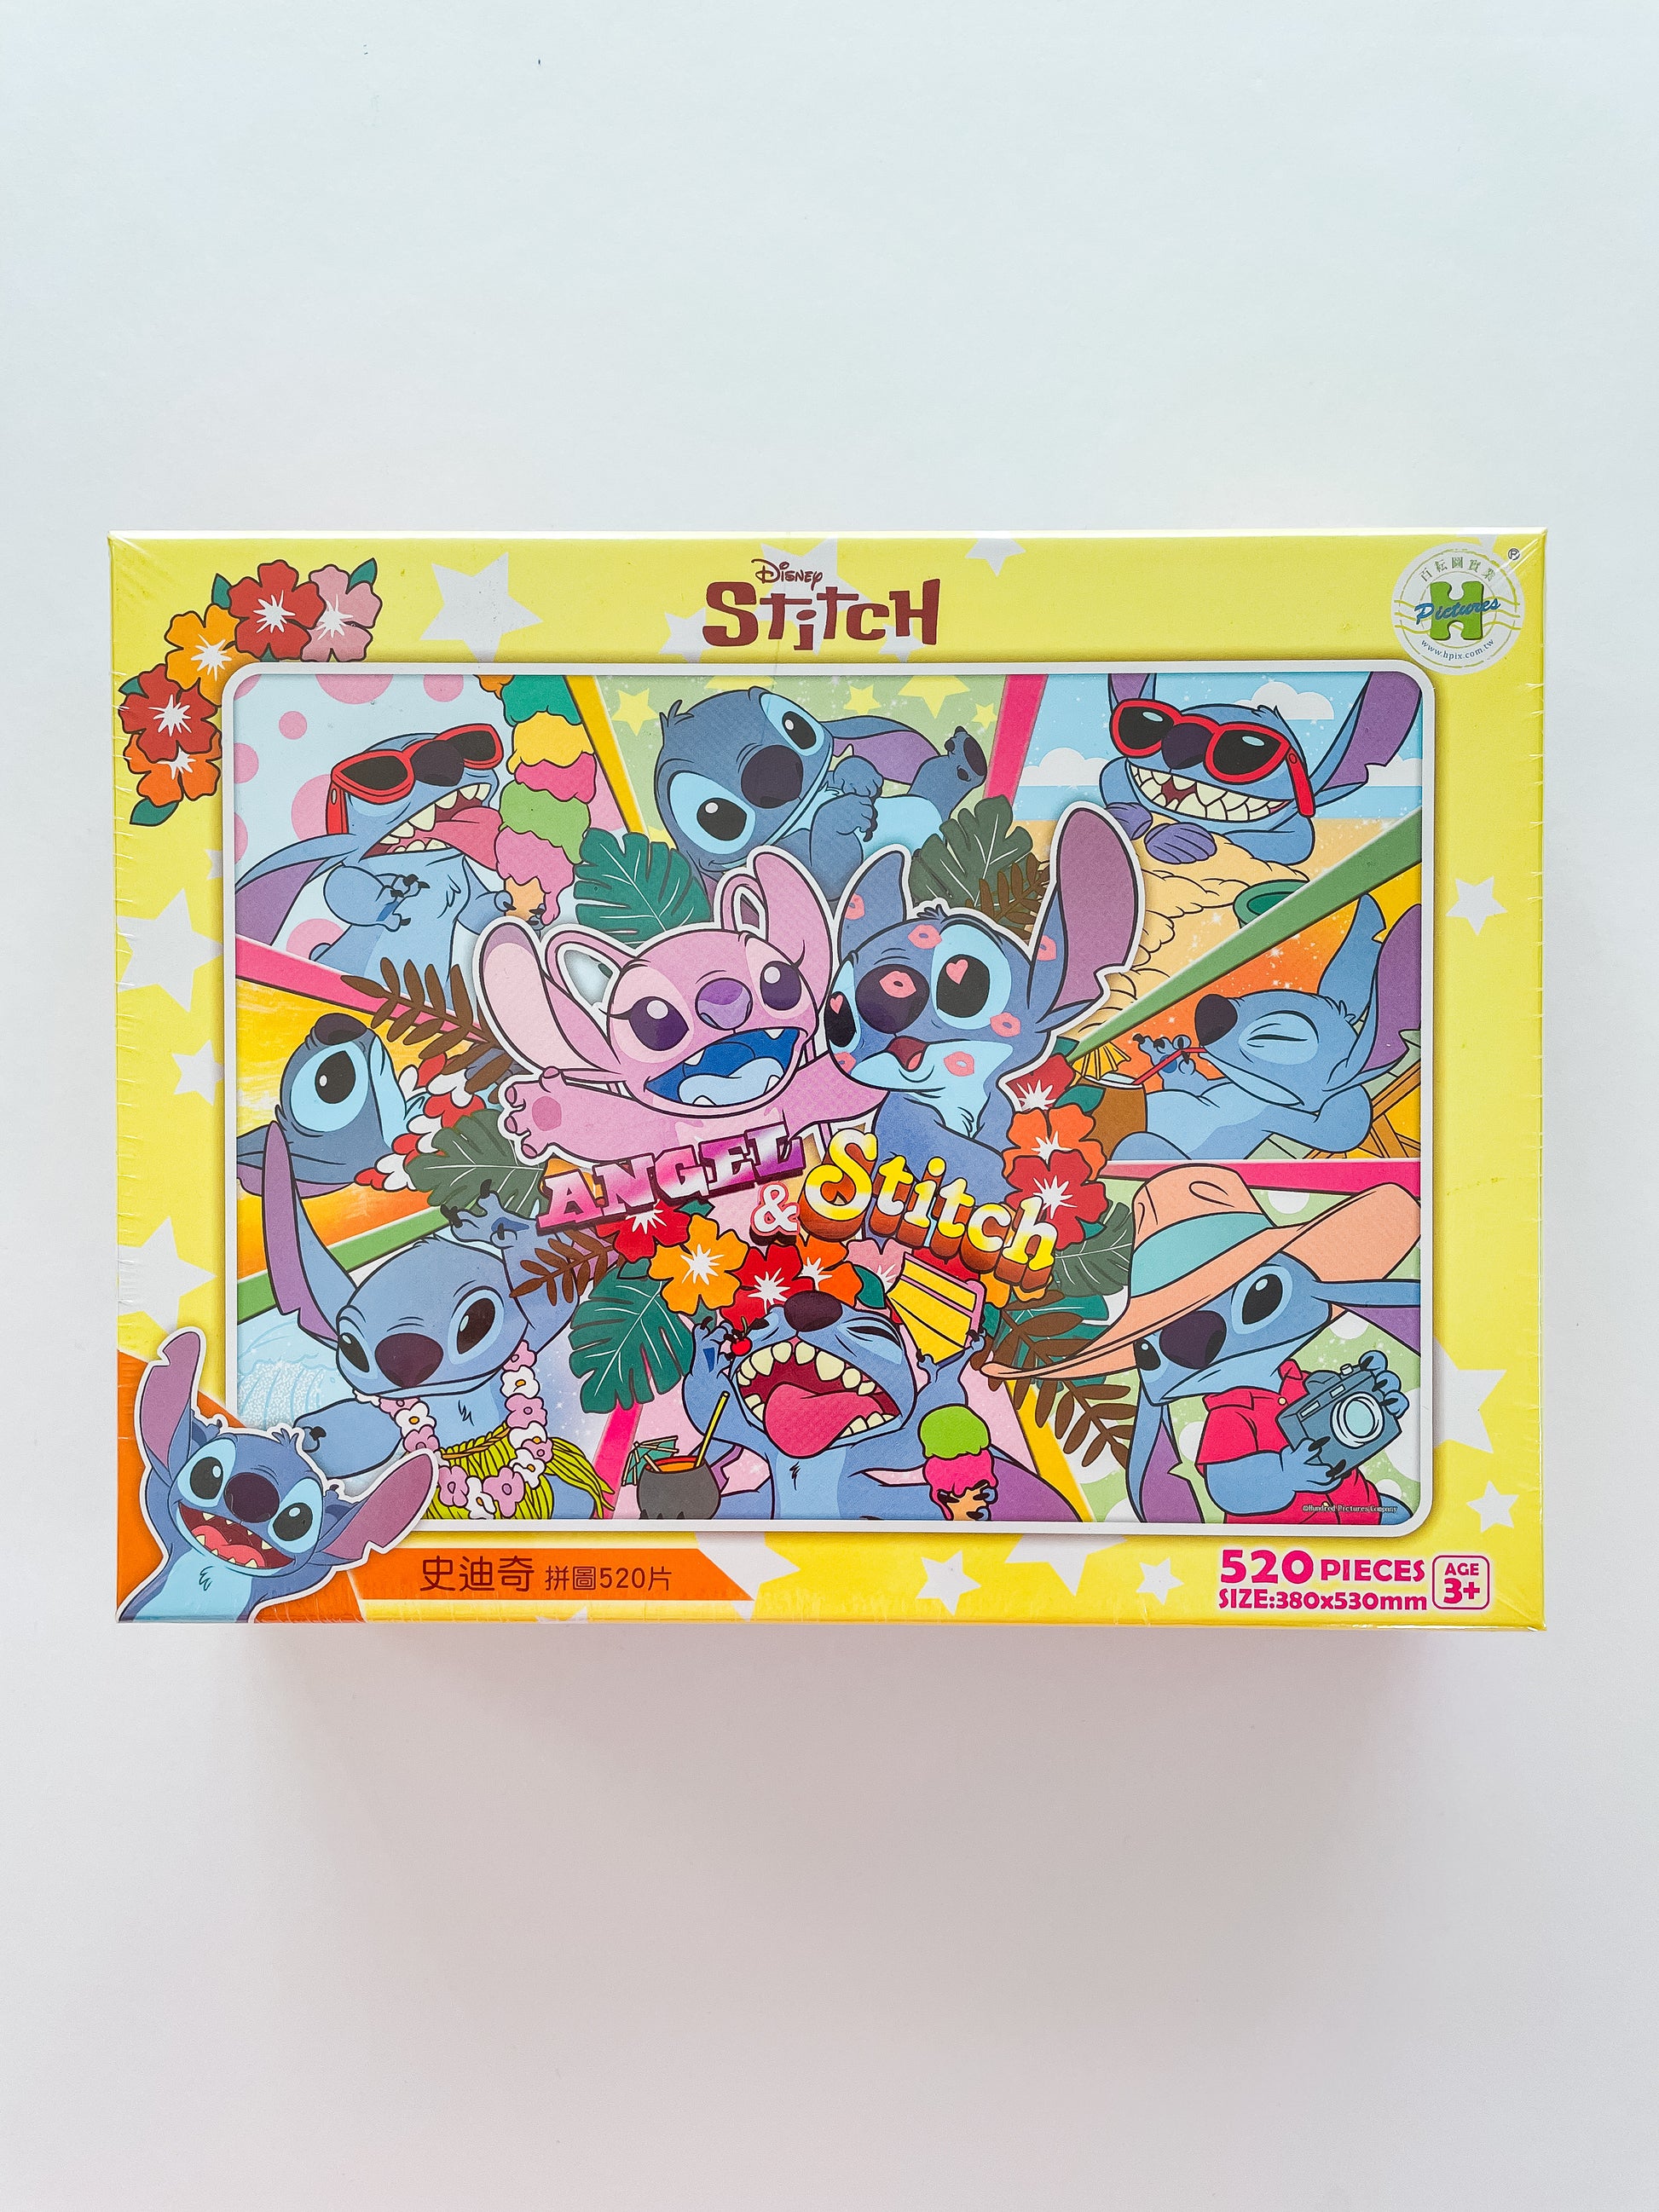 Jigsaw Puzzle Disney Lilo & Stitch in South Island (300 Pieces)